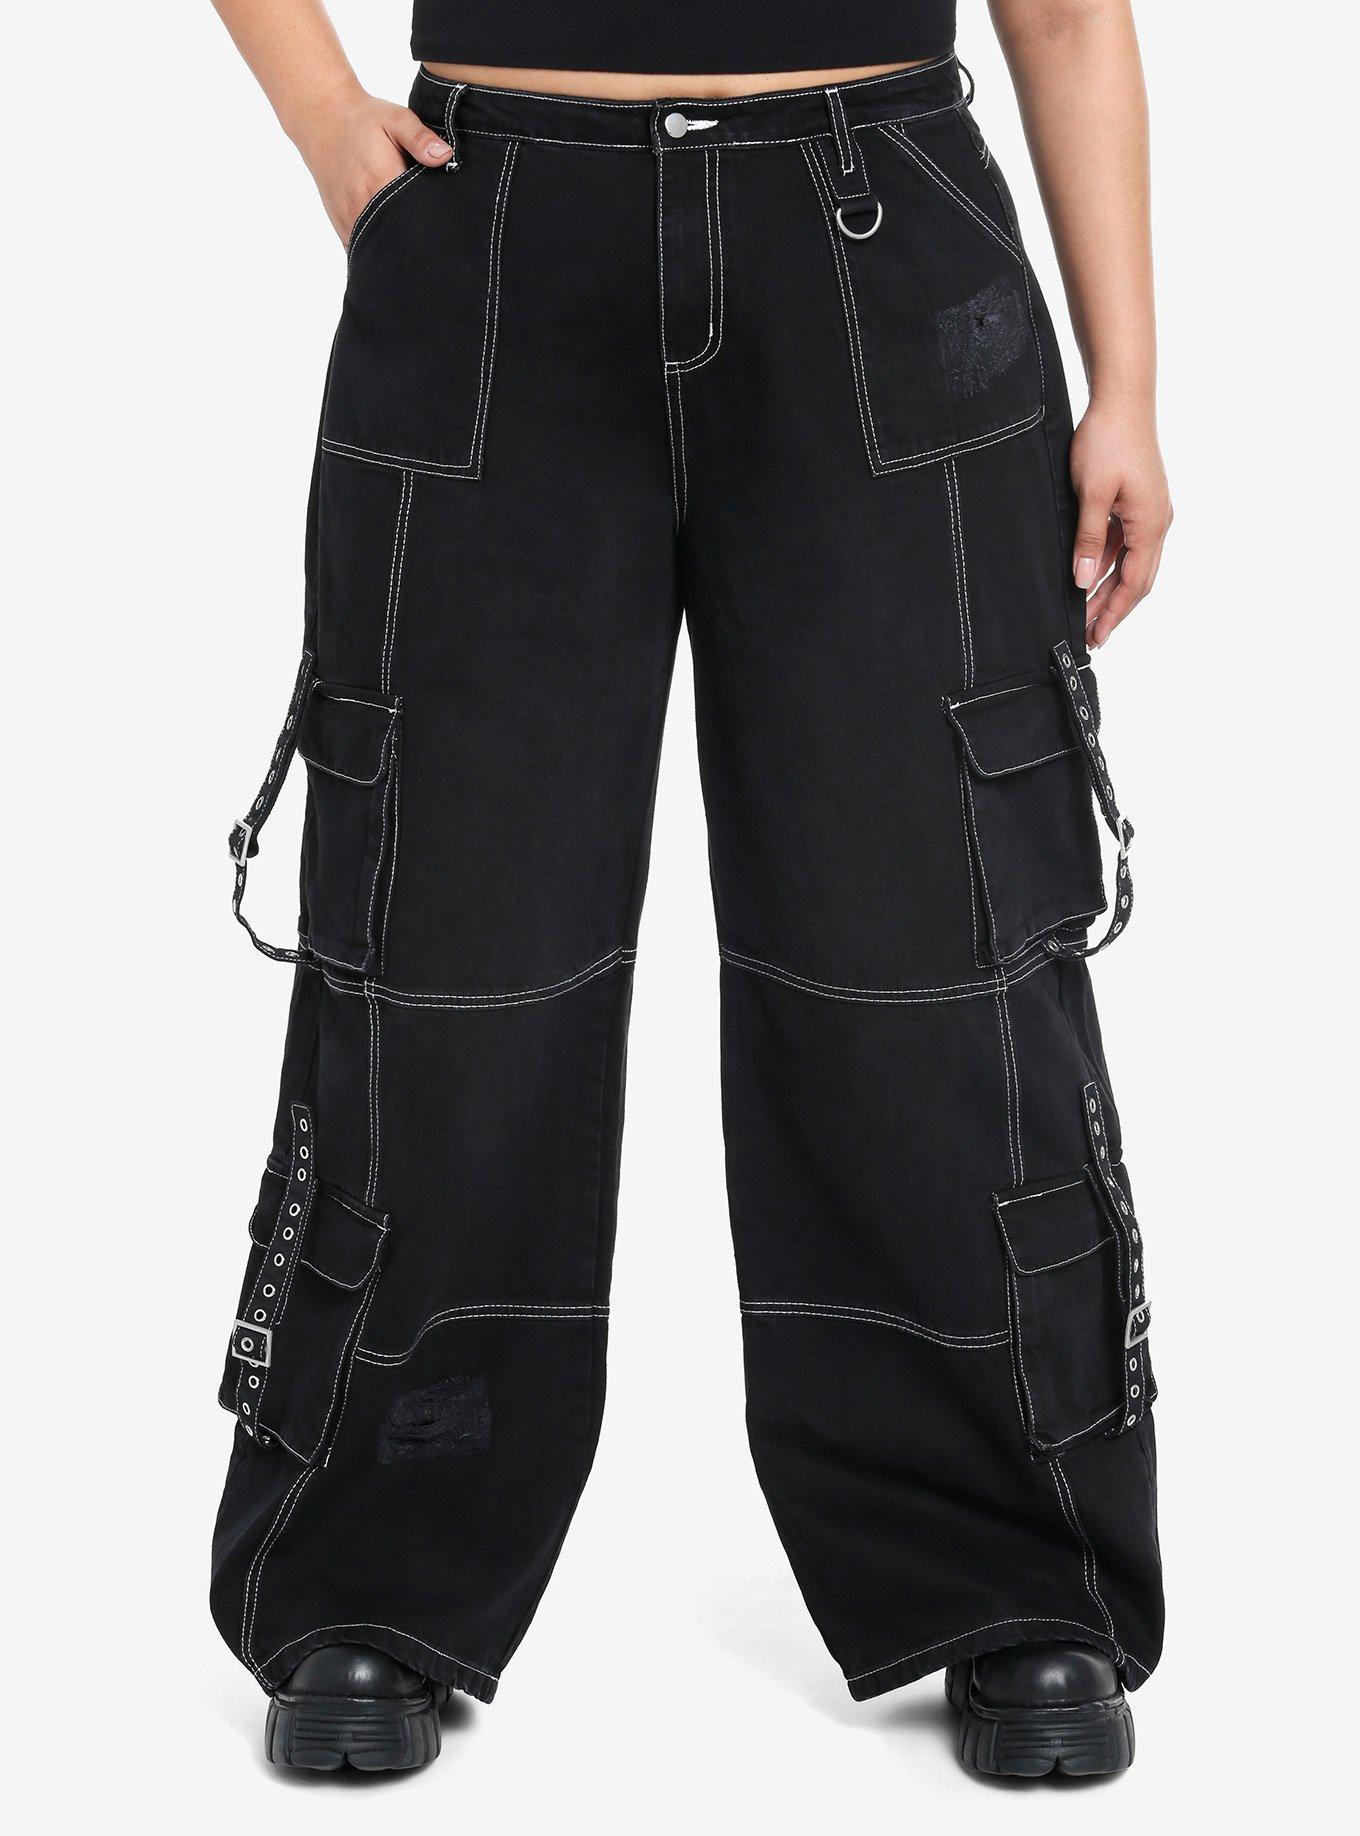 Black & White Contrast Stitch Destructed Carpenter Pants Plus Size